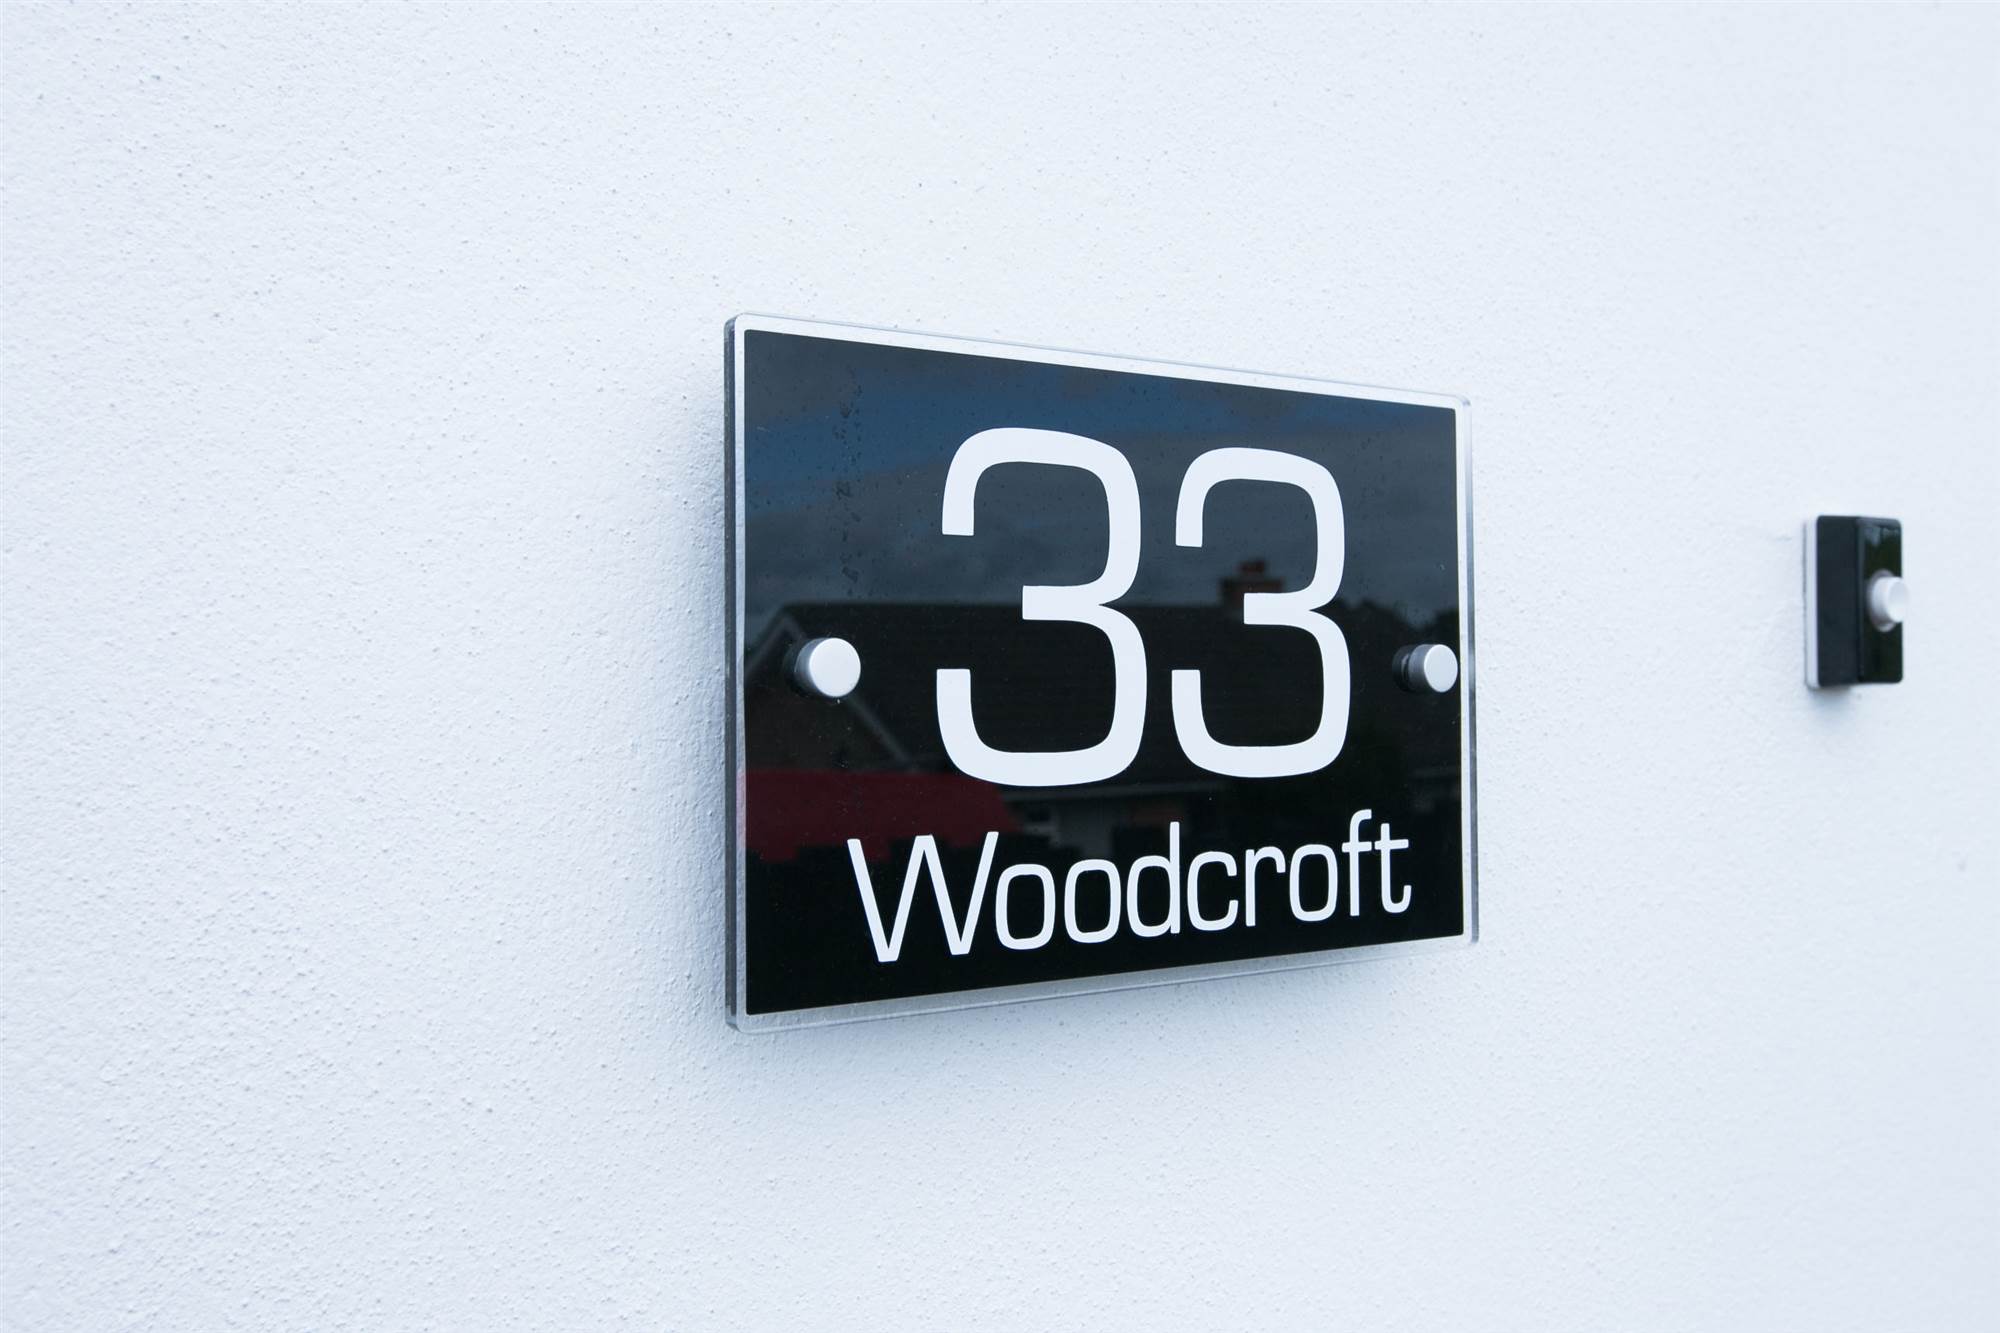 33 Woodcroft Park